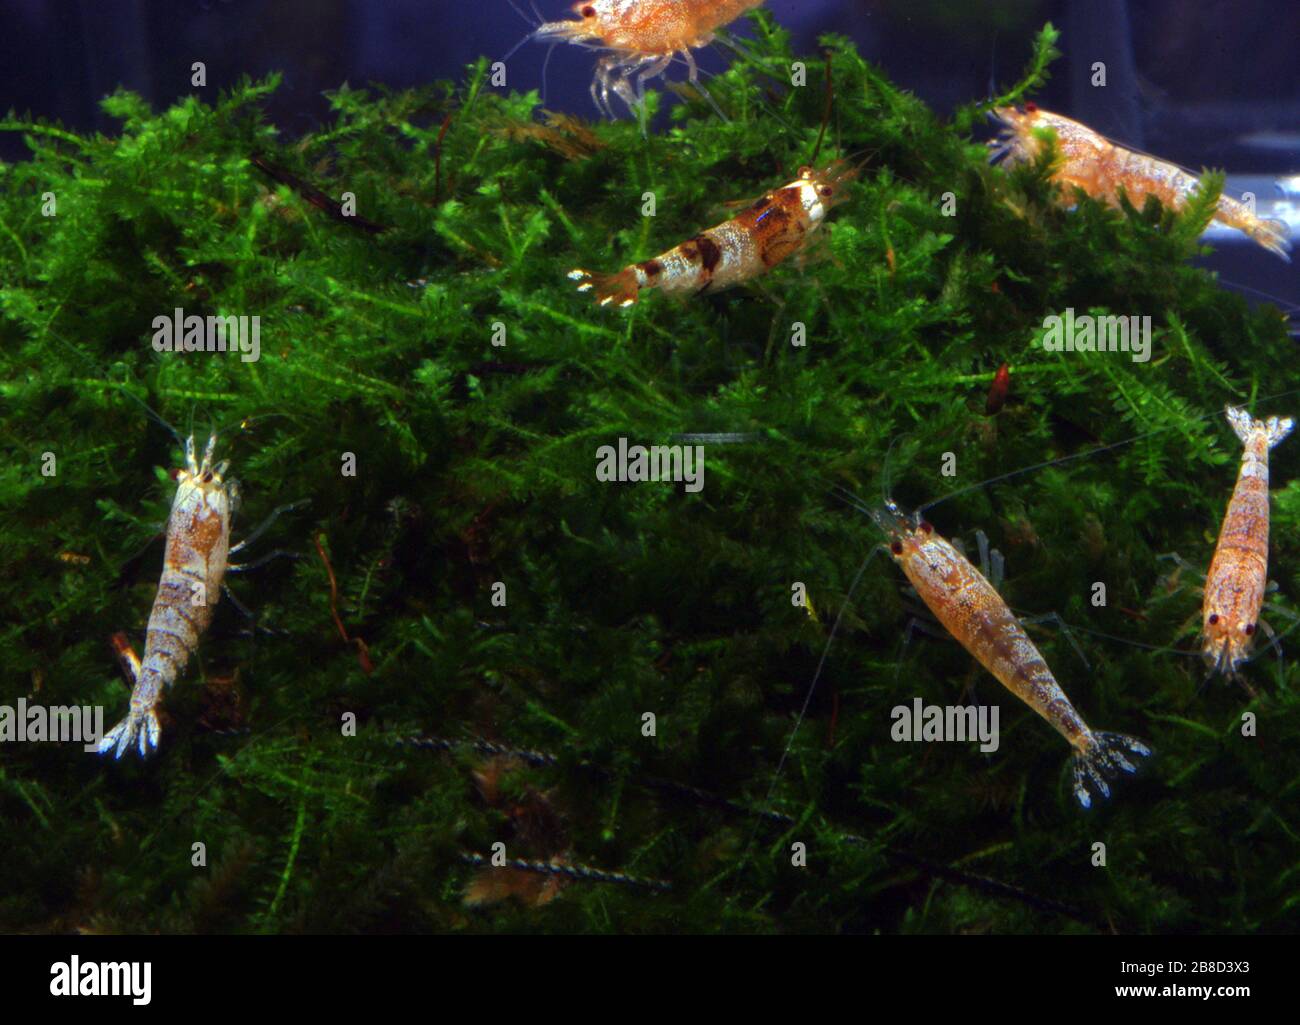 Freshwater dwarf shrimp, Neocaridina spp. Stock Photo